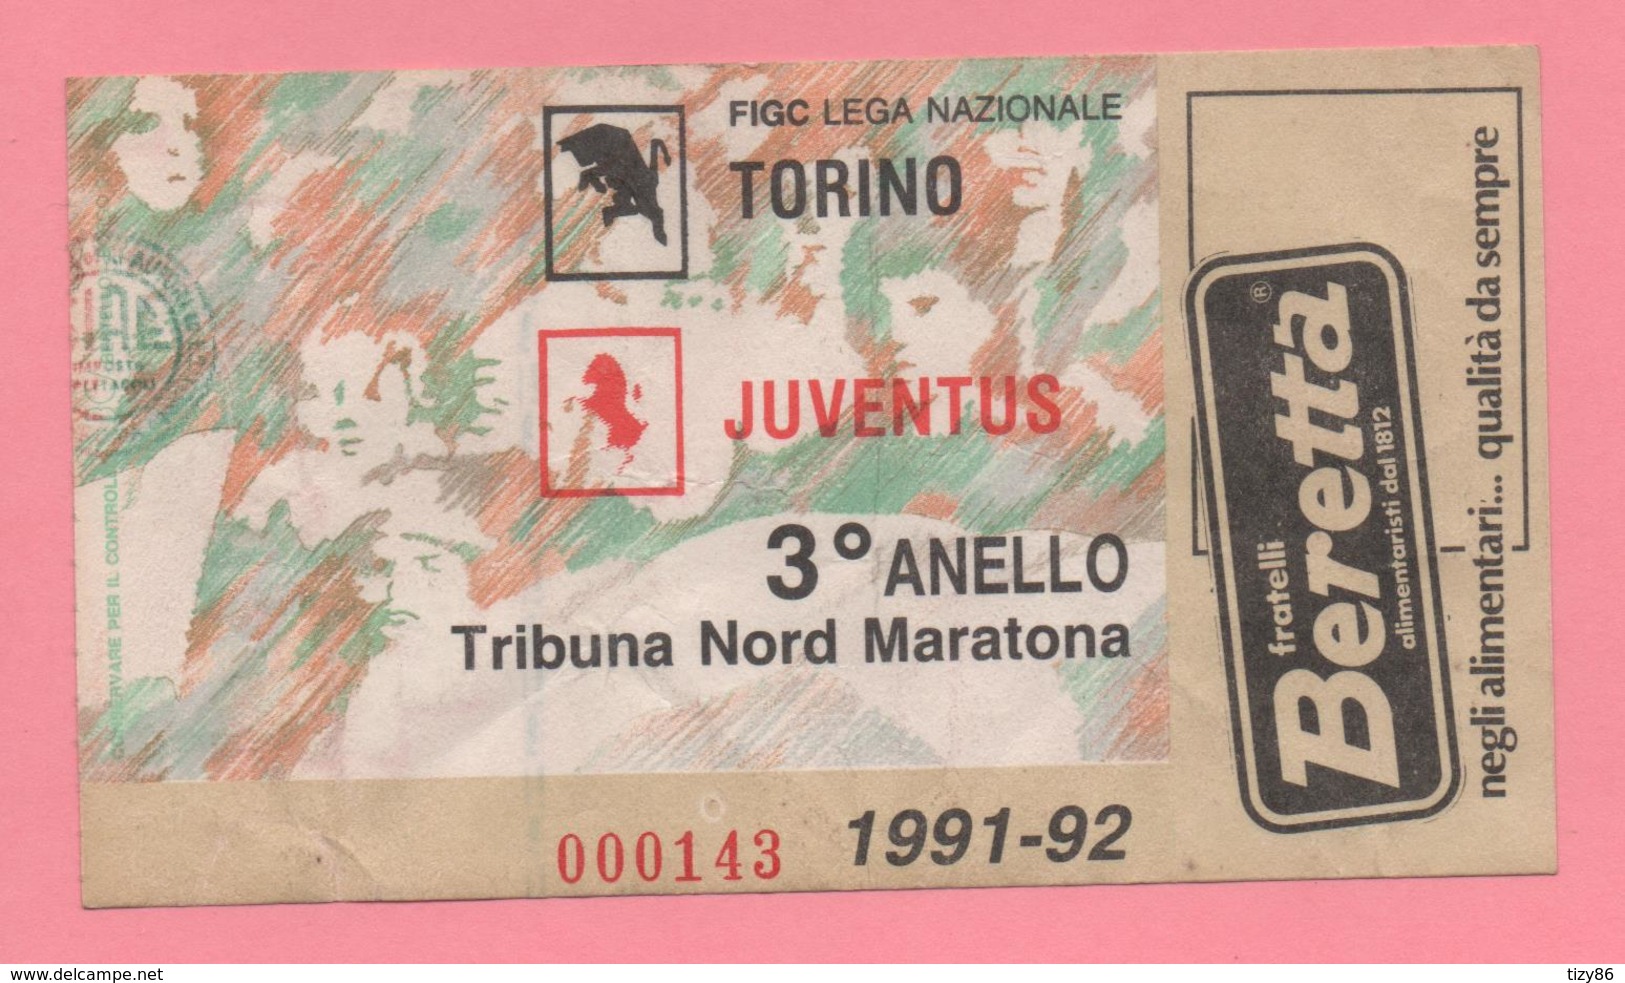 Biglietto D'ingresso Stadio Torino Juventus 1991-92 - Biglietti D'ingresso